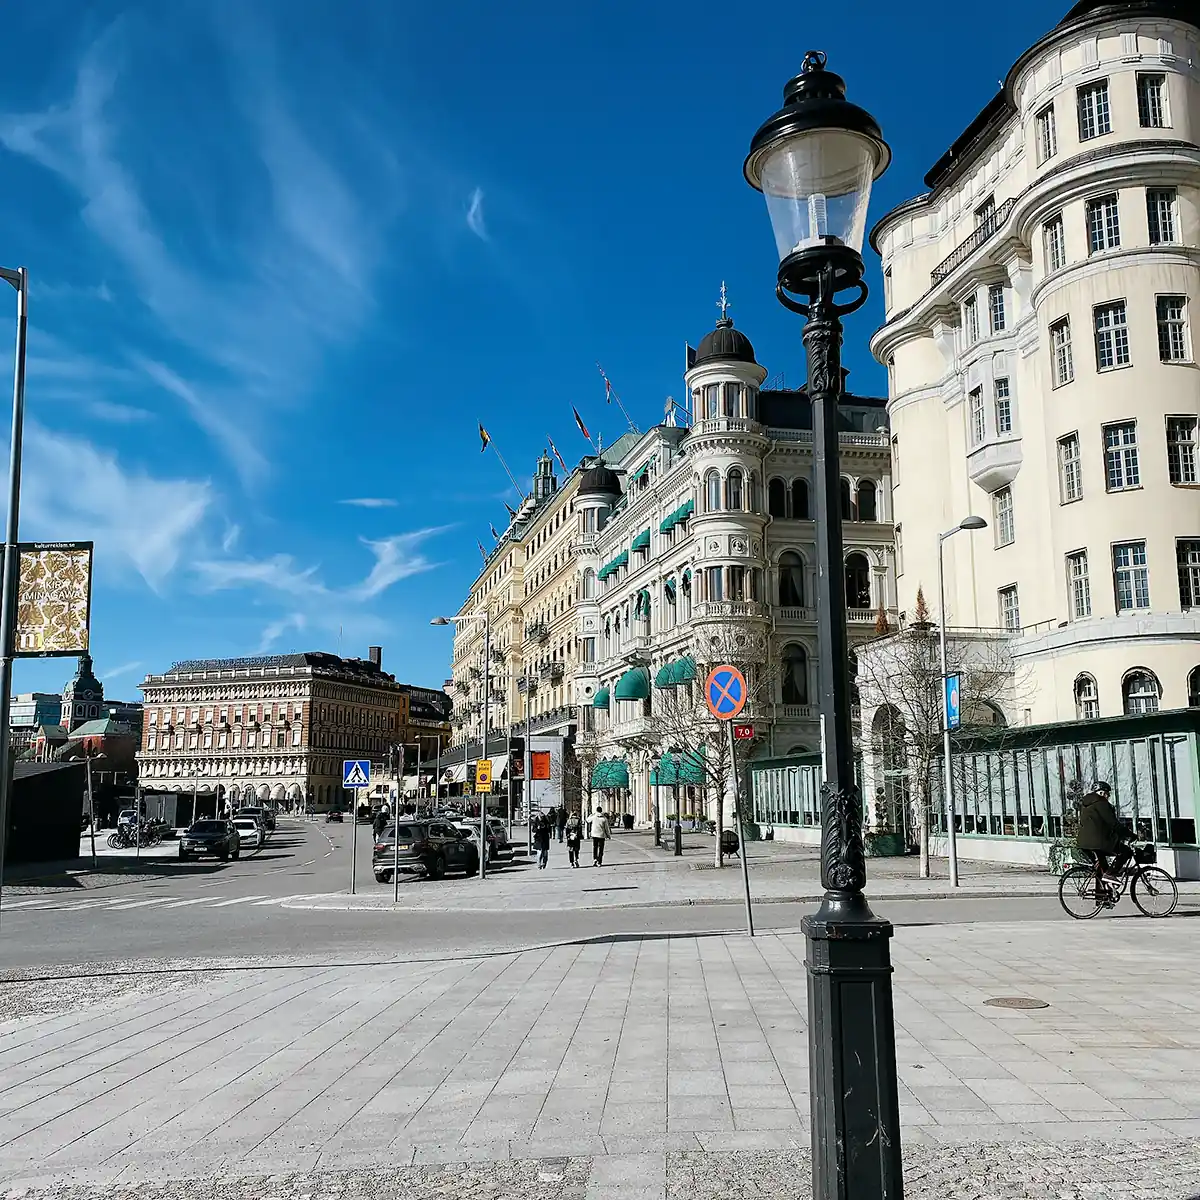 Street in Stockholm, Sweden